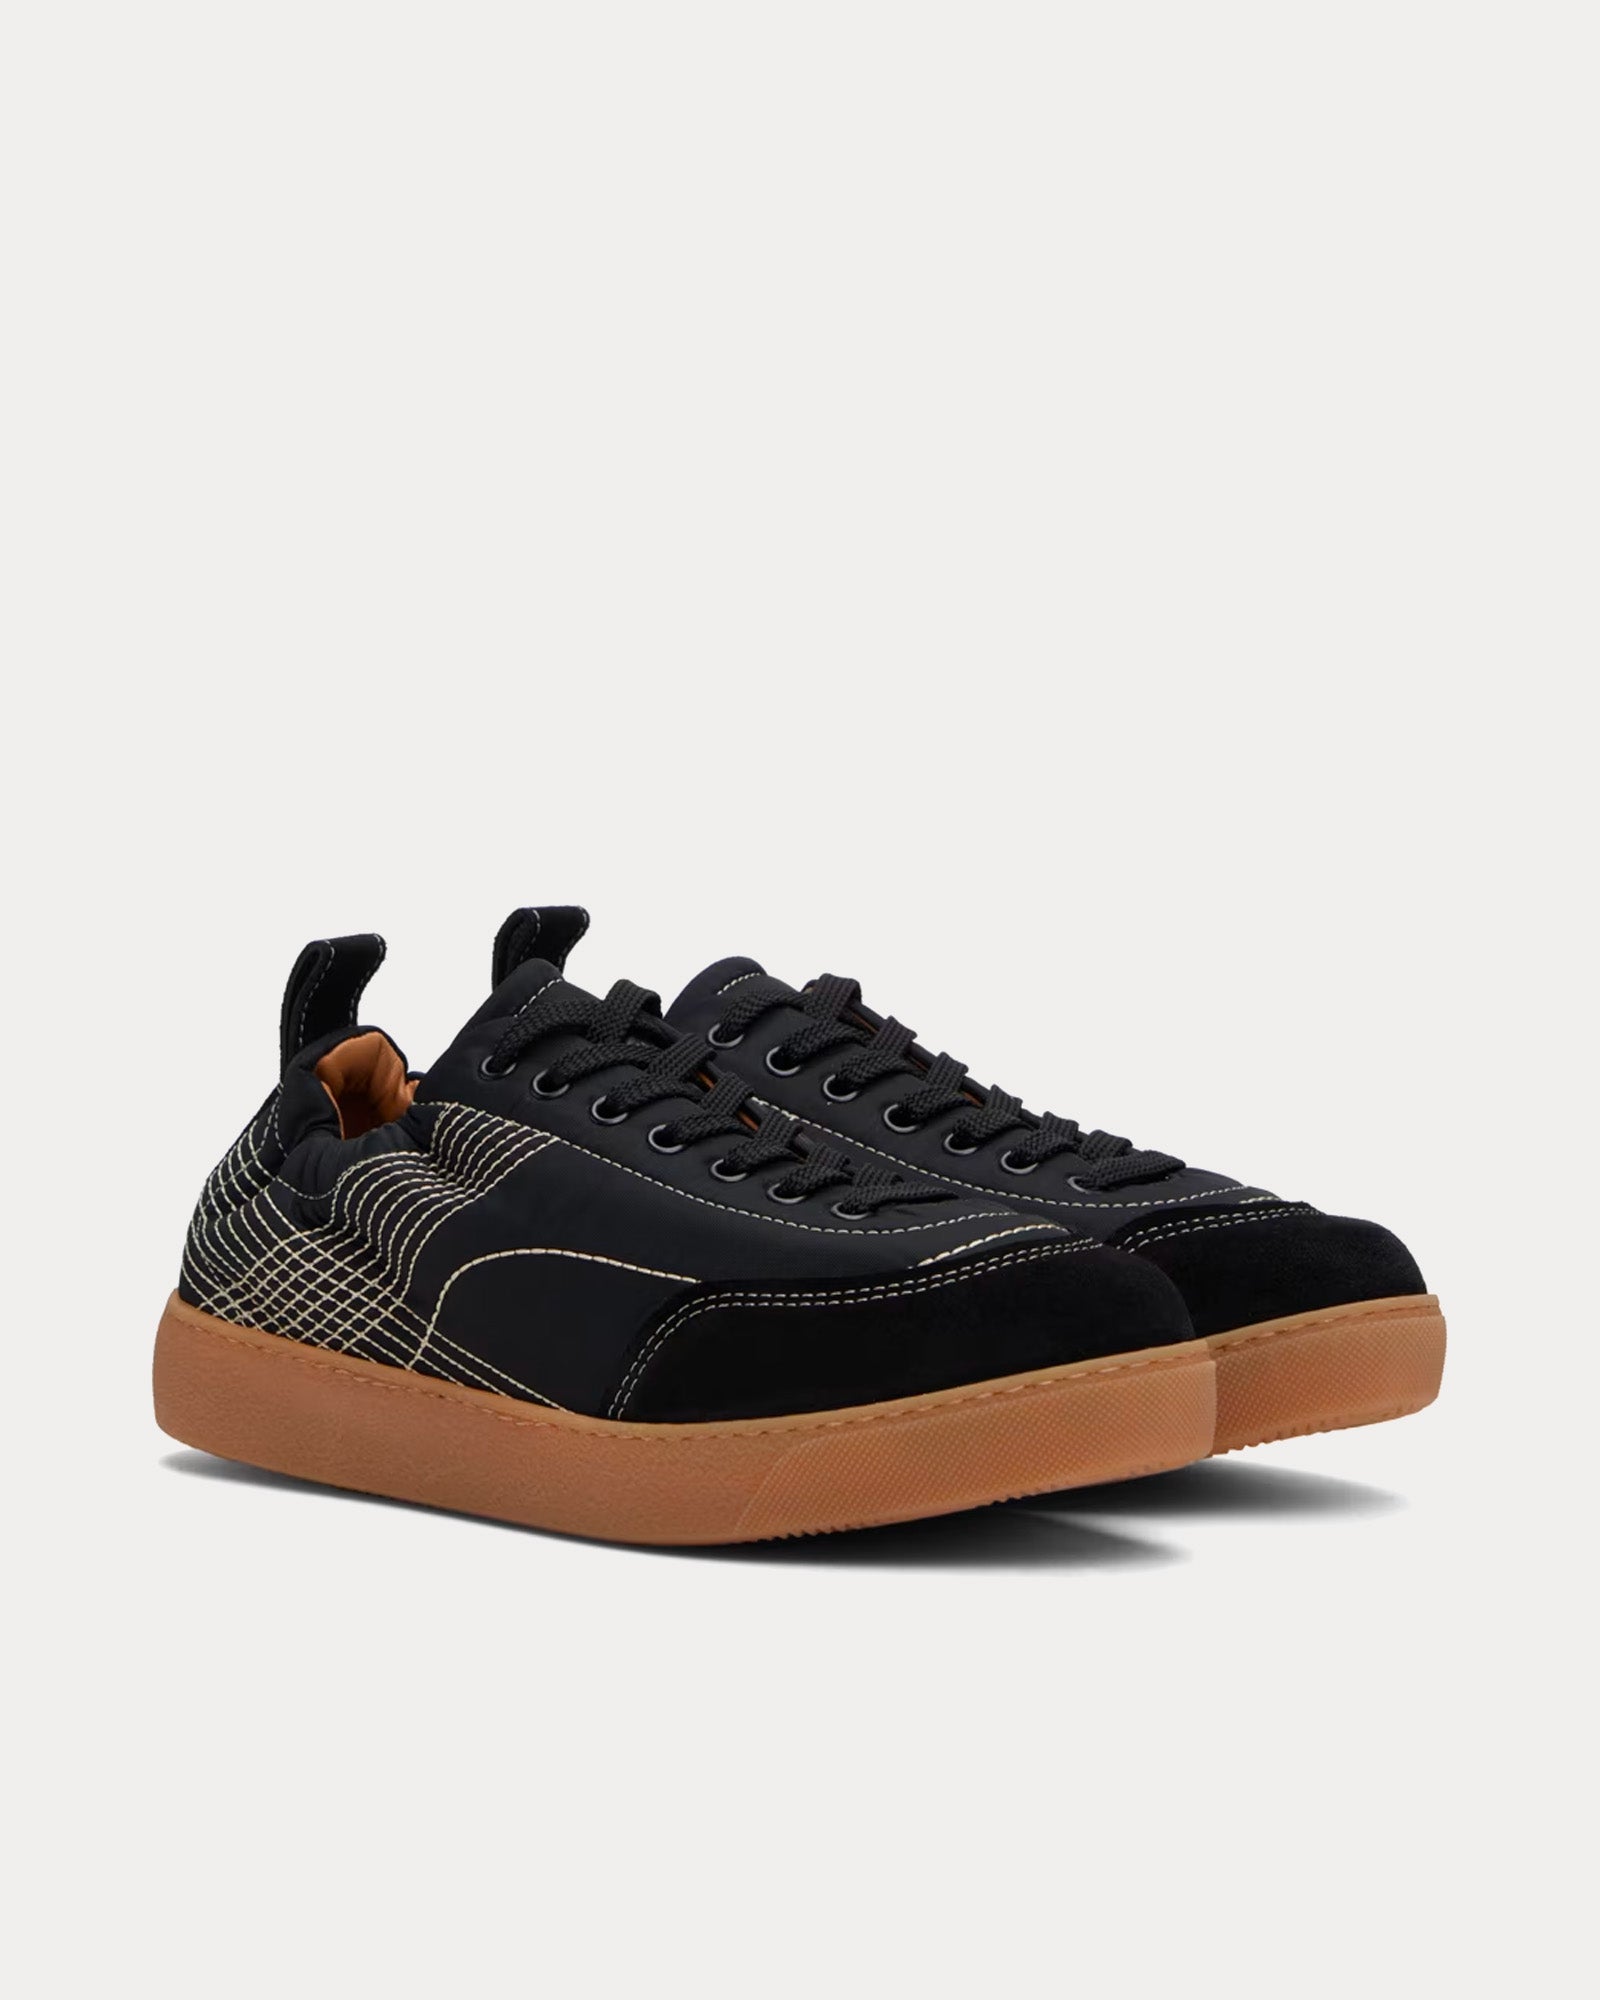 Dries Van Noten - Quilted Black Low Top Sneakers